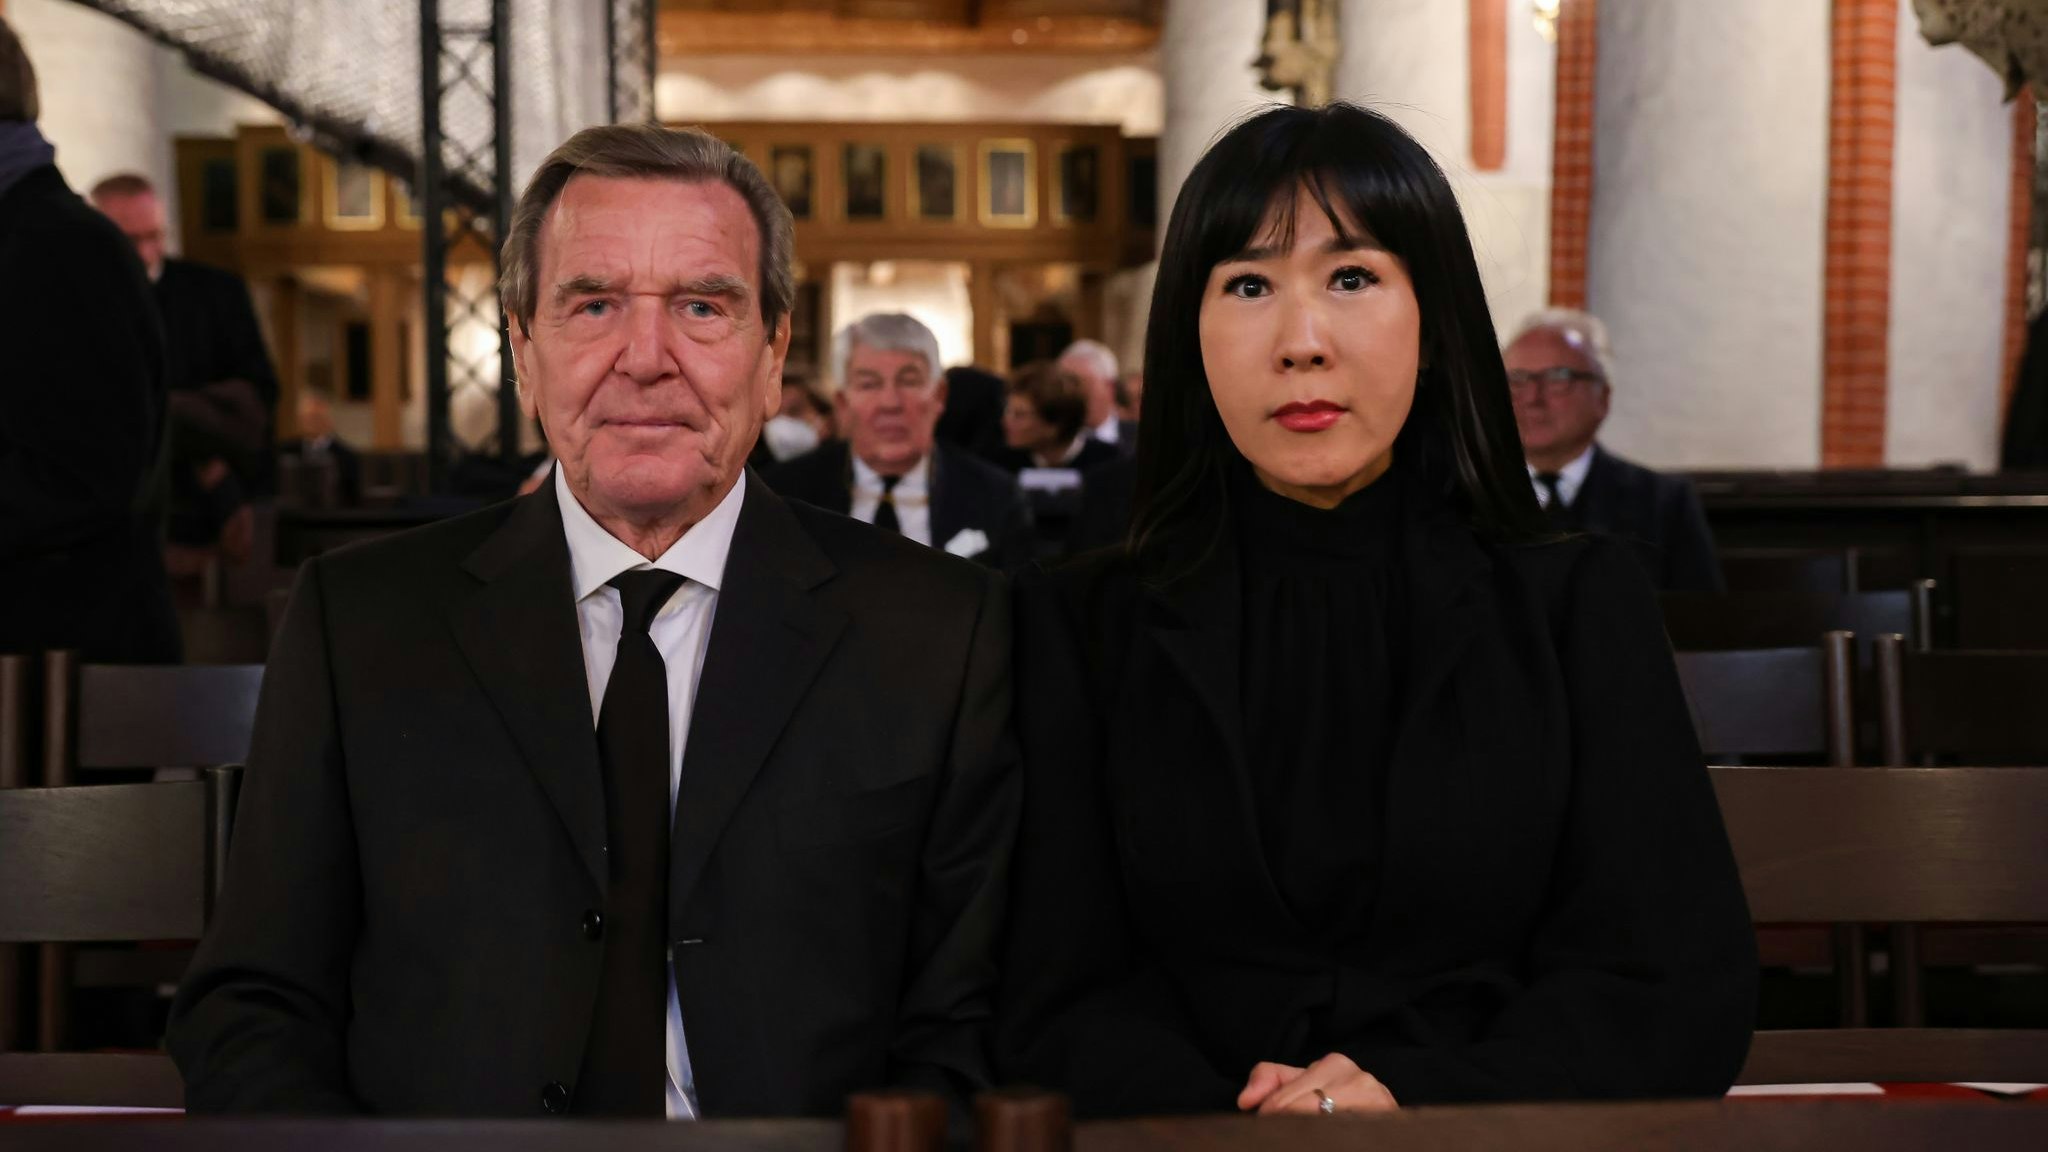 Der ehemaliger Bundeskanzler Gerhard Schröder und seine Frau So-yeon Schröder-Kim nehmen an einer Gedenkfeier teil. Foto: dpa/Perrey